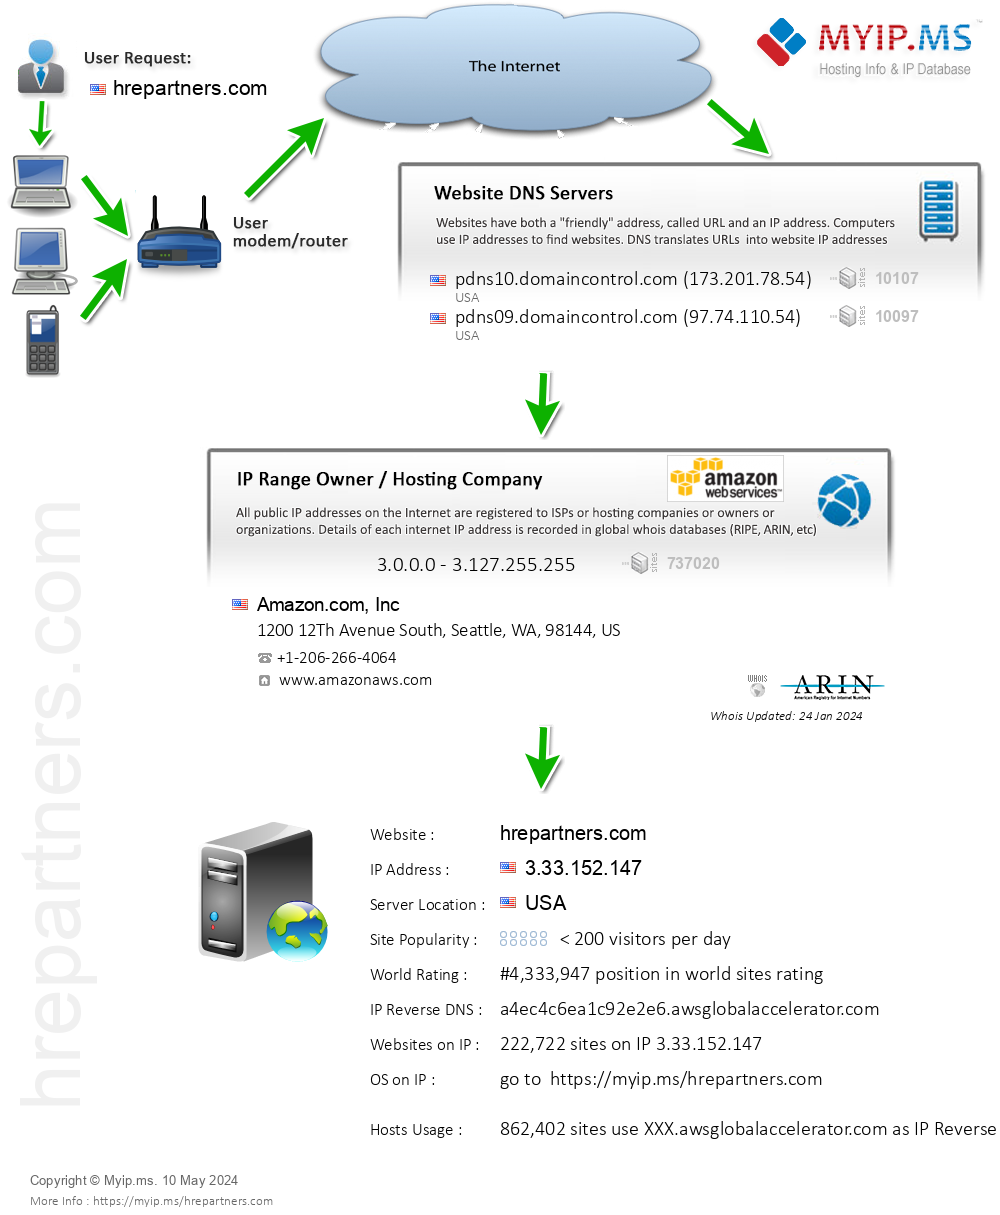 Hrepartners.com - Website Hosting Visual IP Diagram